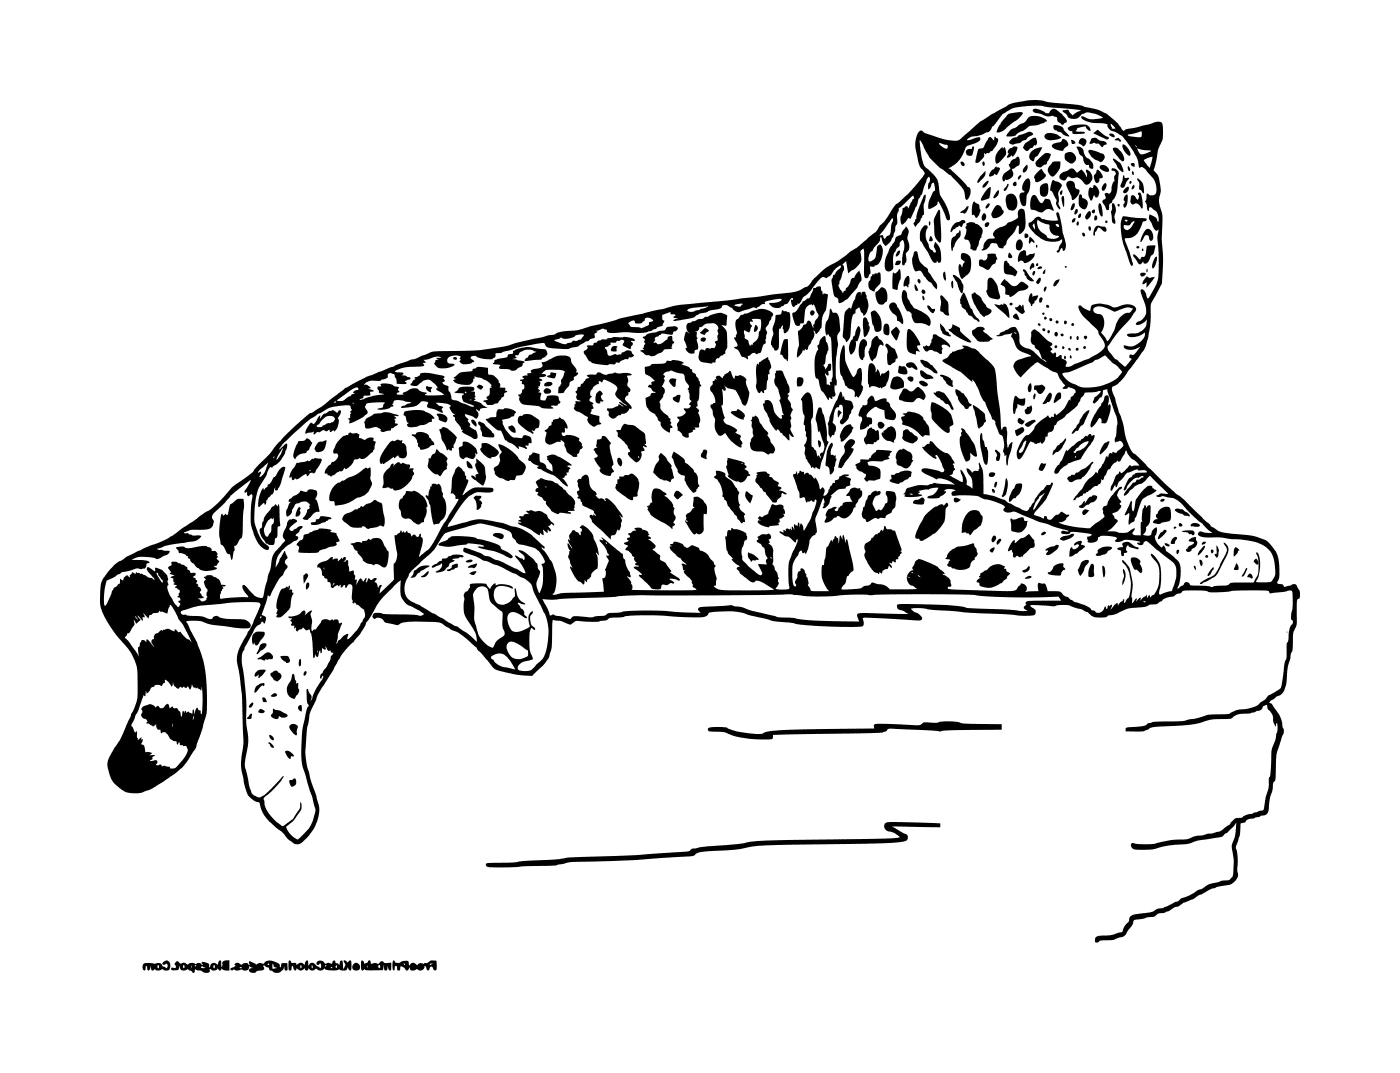  A lying leopard 